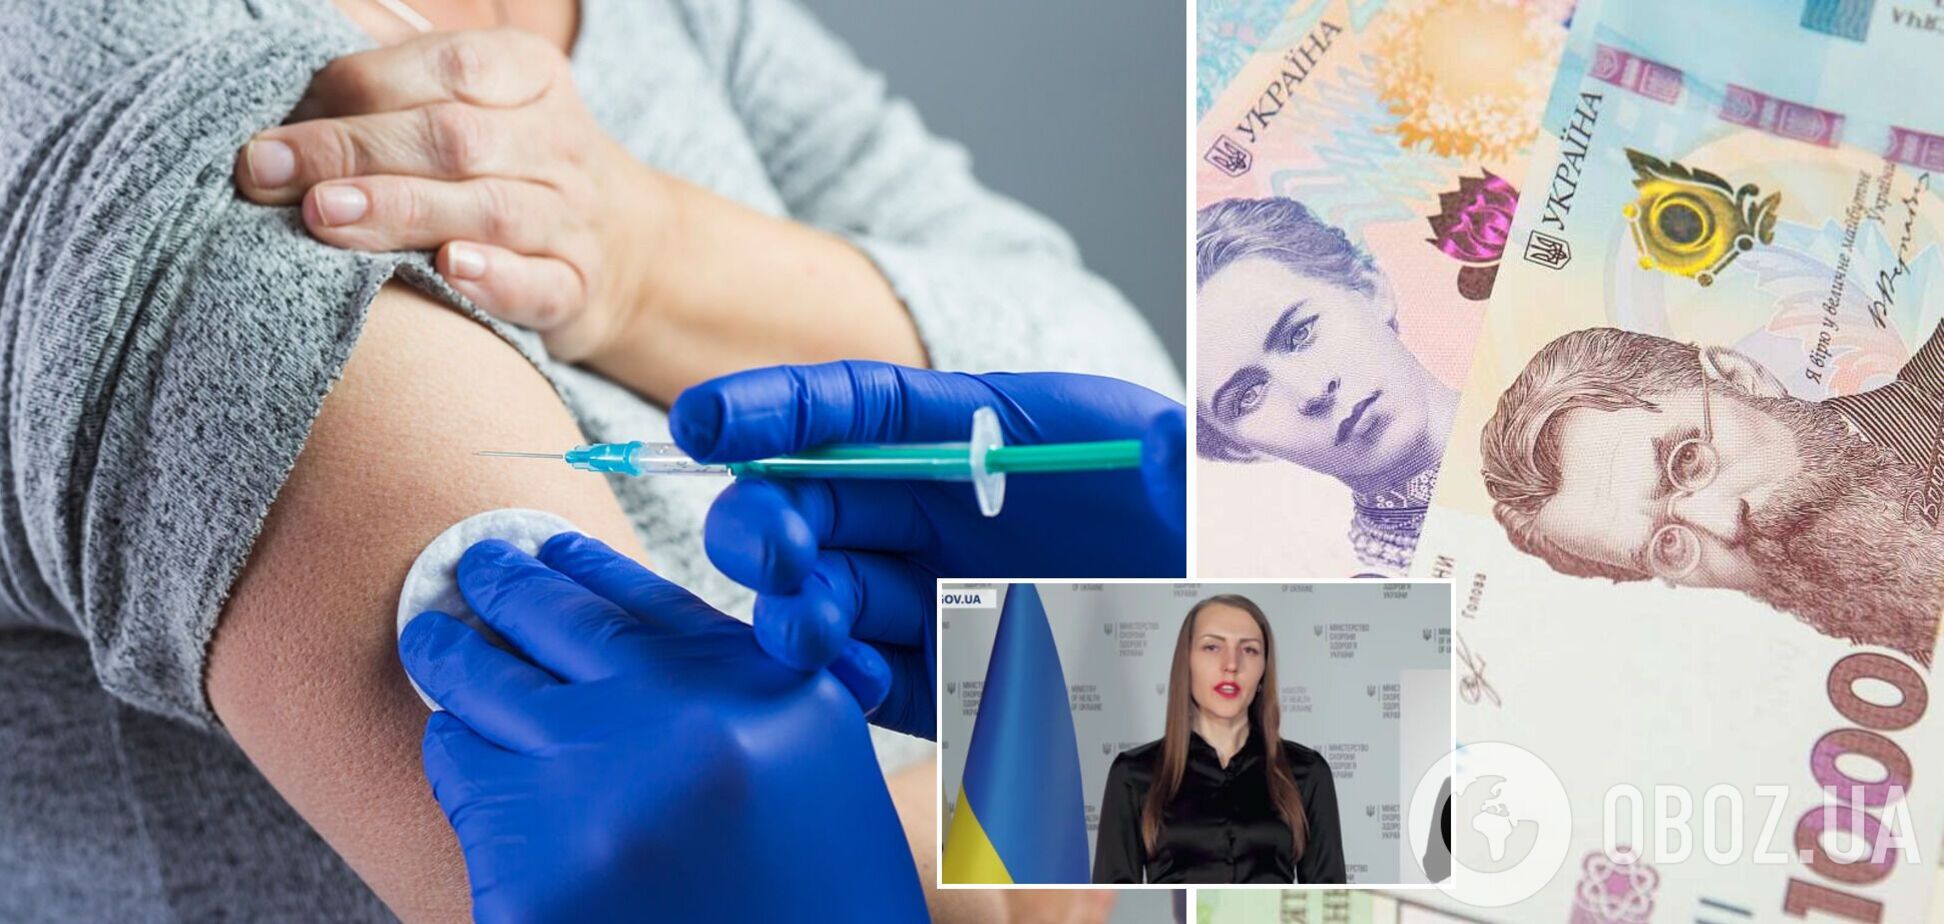 В Минздраве призвали не верить фейкам о выплате денег за прививку против COVID-19